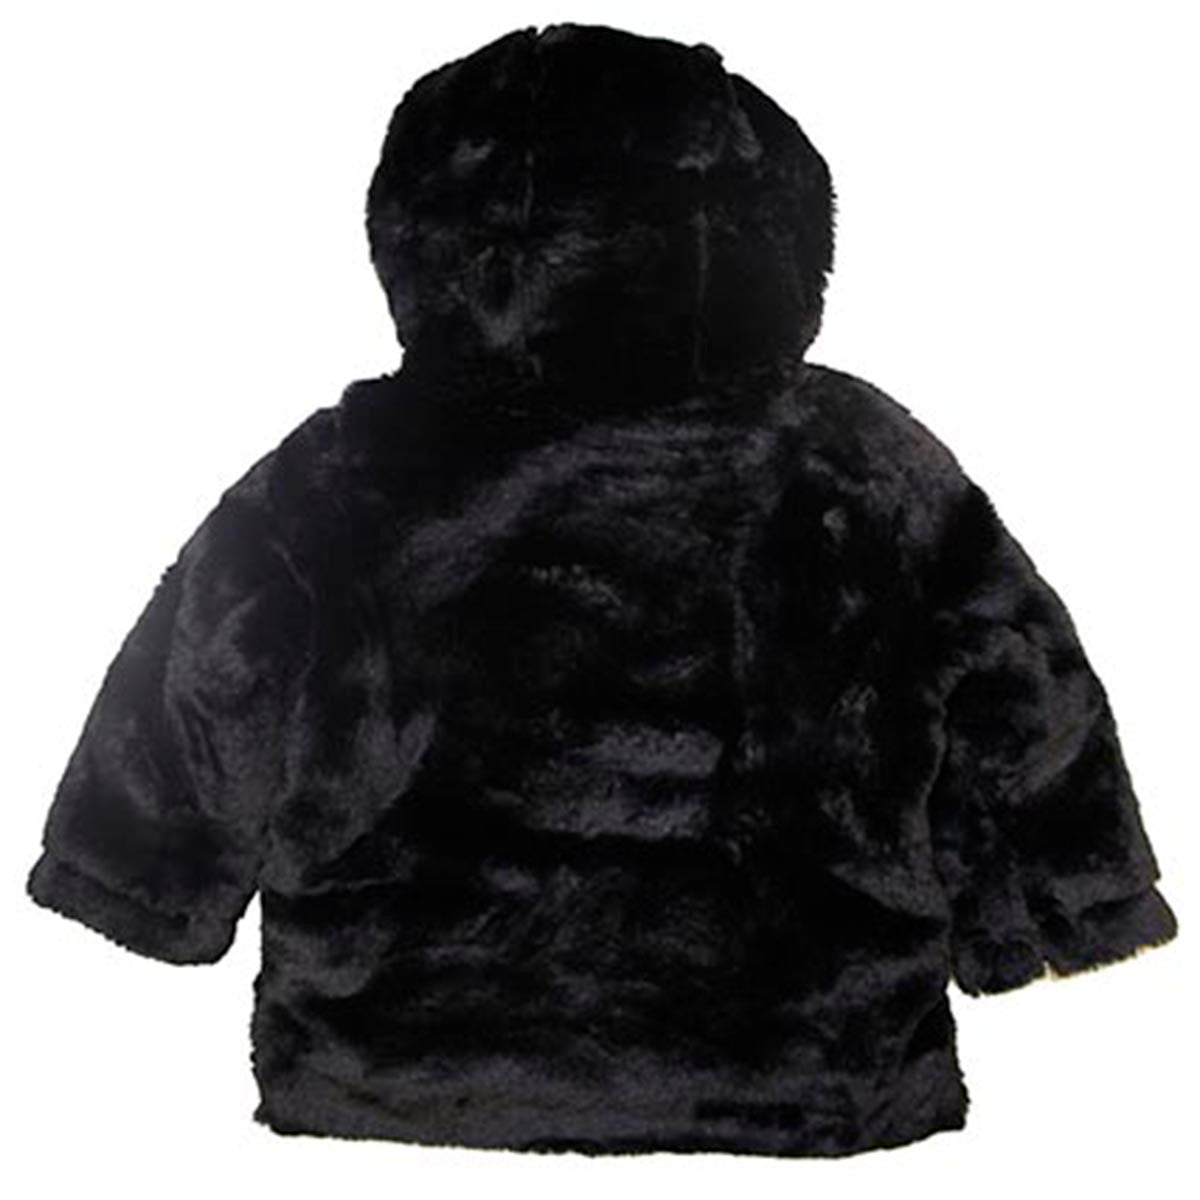 Jordan Craig Zip Up Hooded Faux Fur Jacket Toddlers Style : 91336k